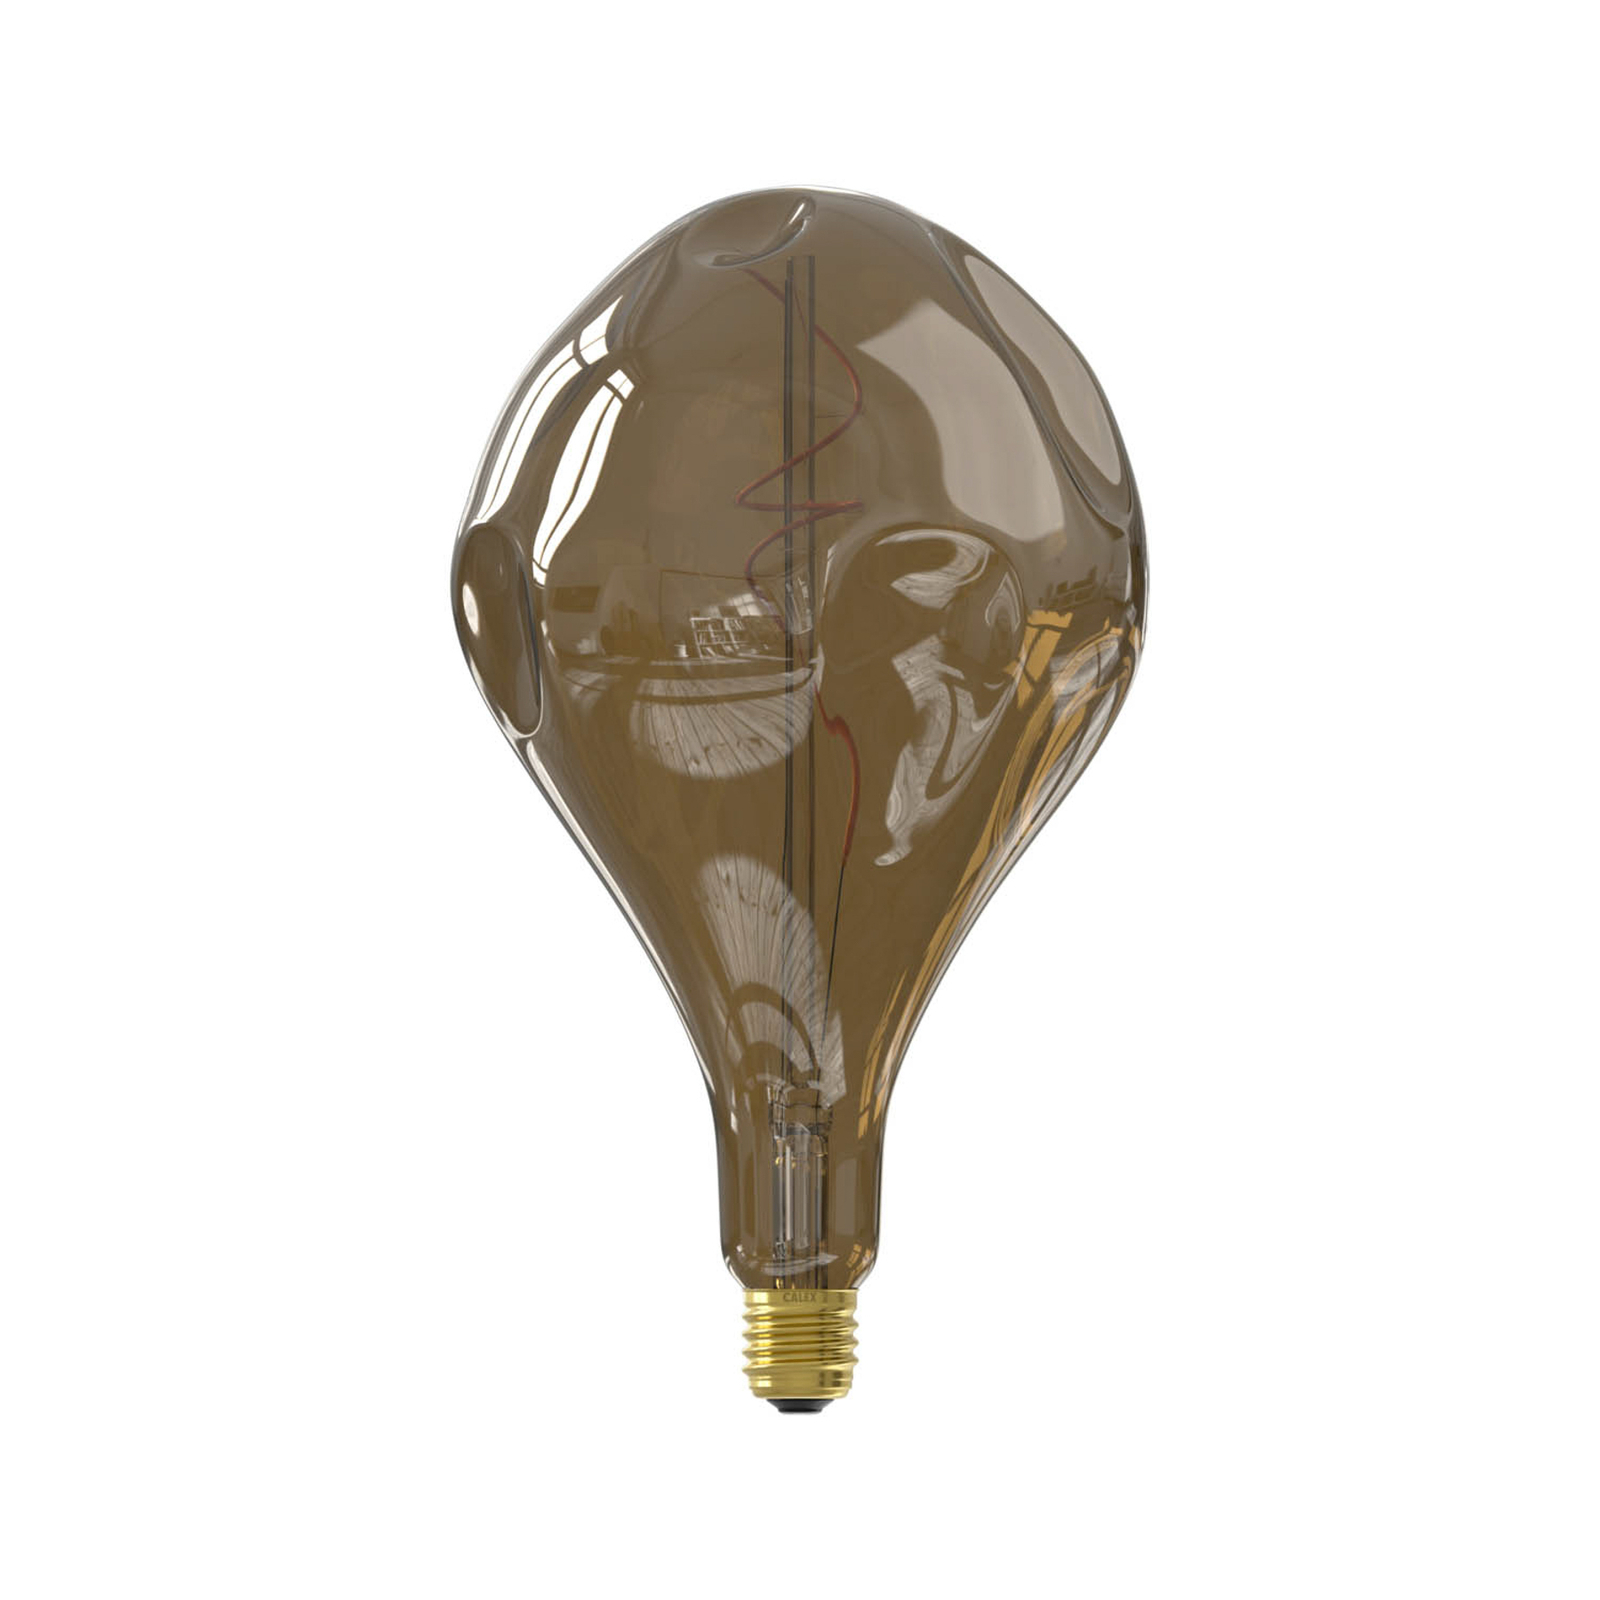 Calex Organic Evo LED-lampa E27 6W dim natur